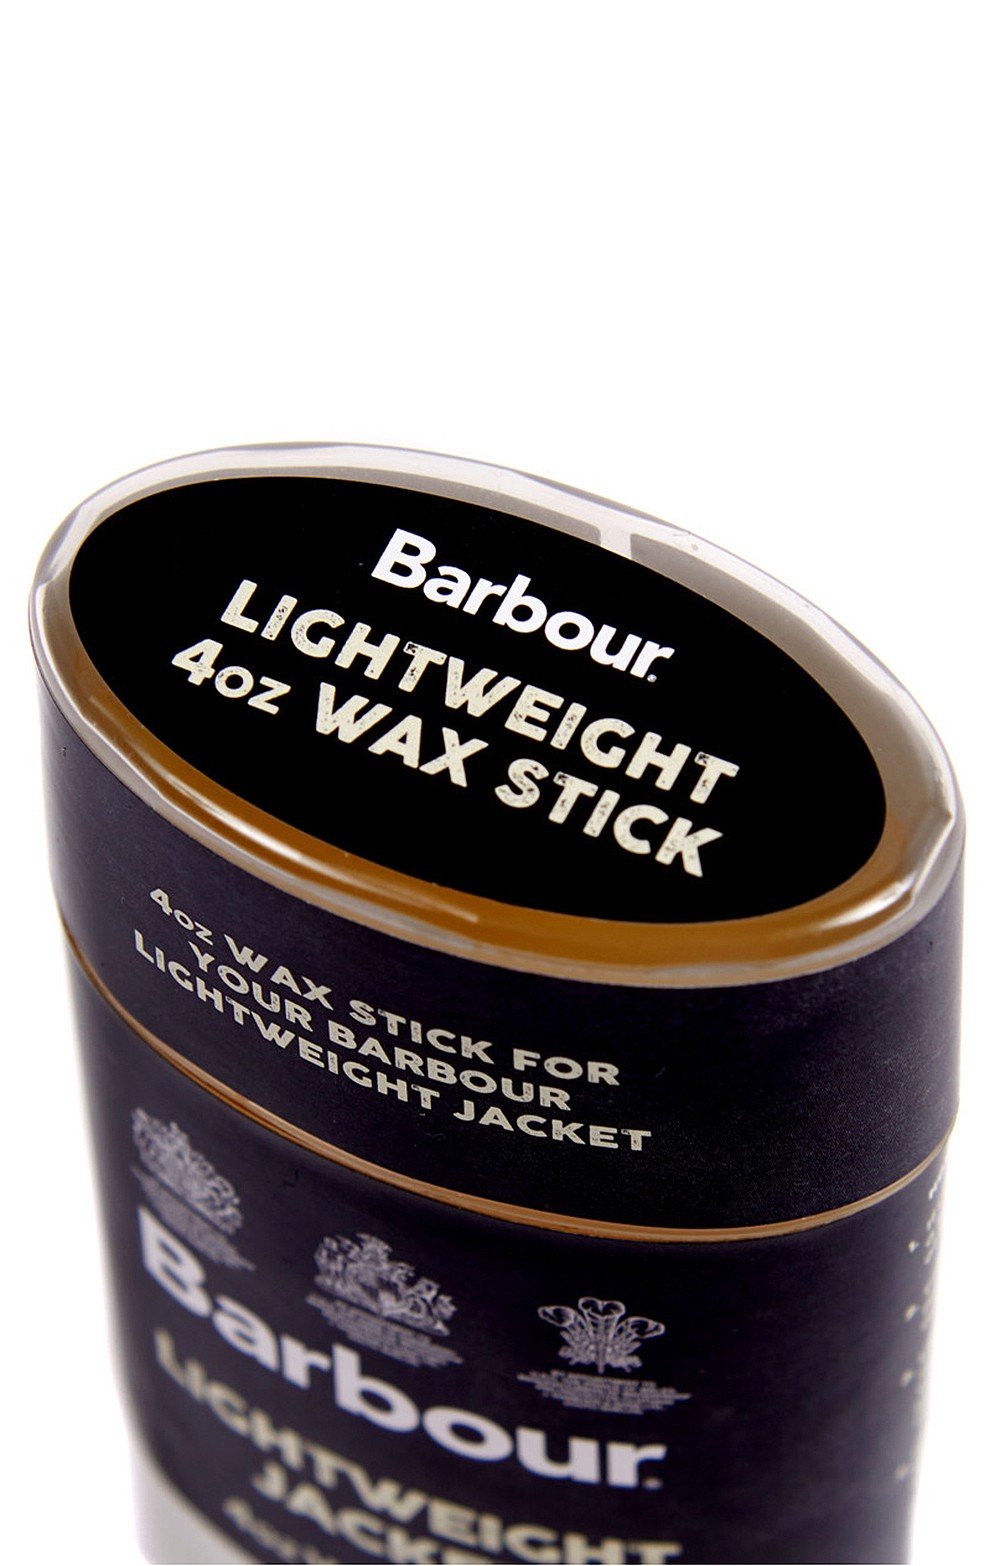 barbour lightweight wax stick